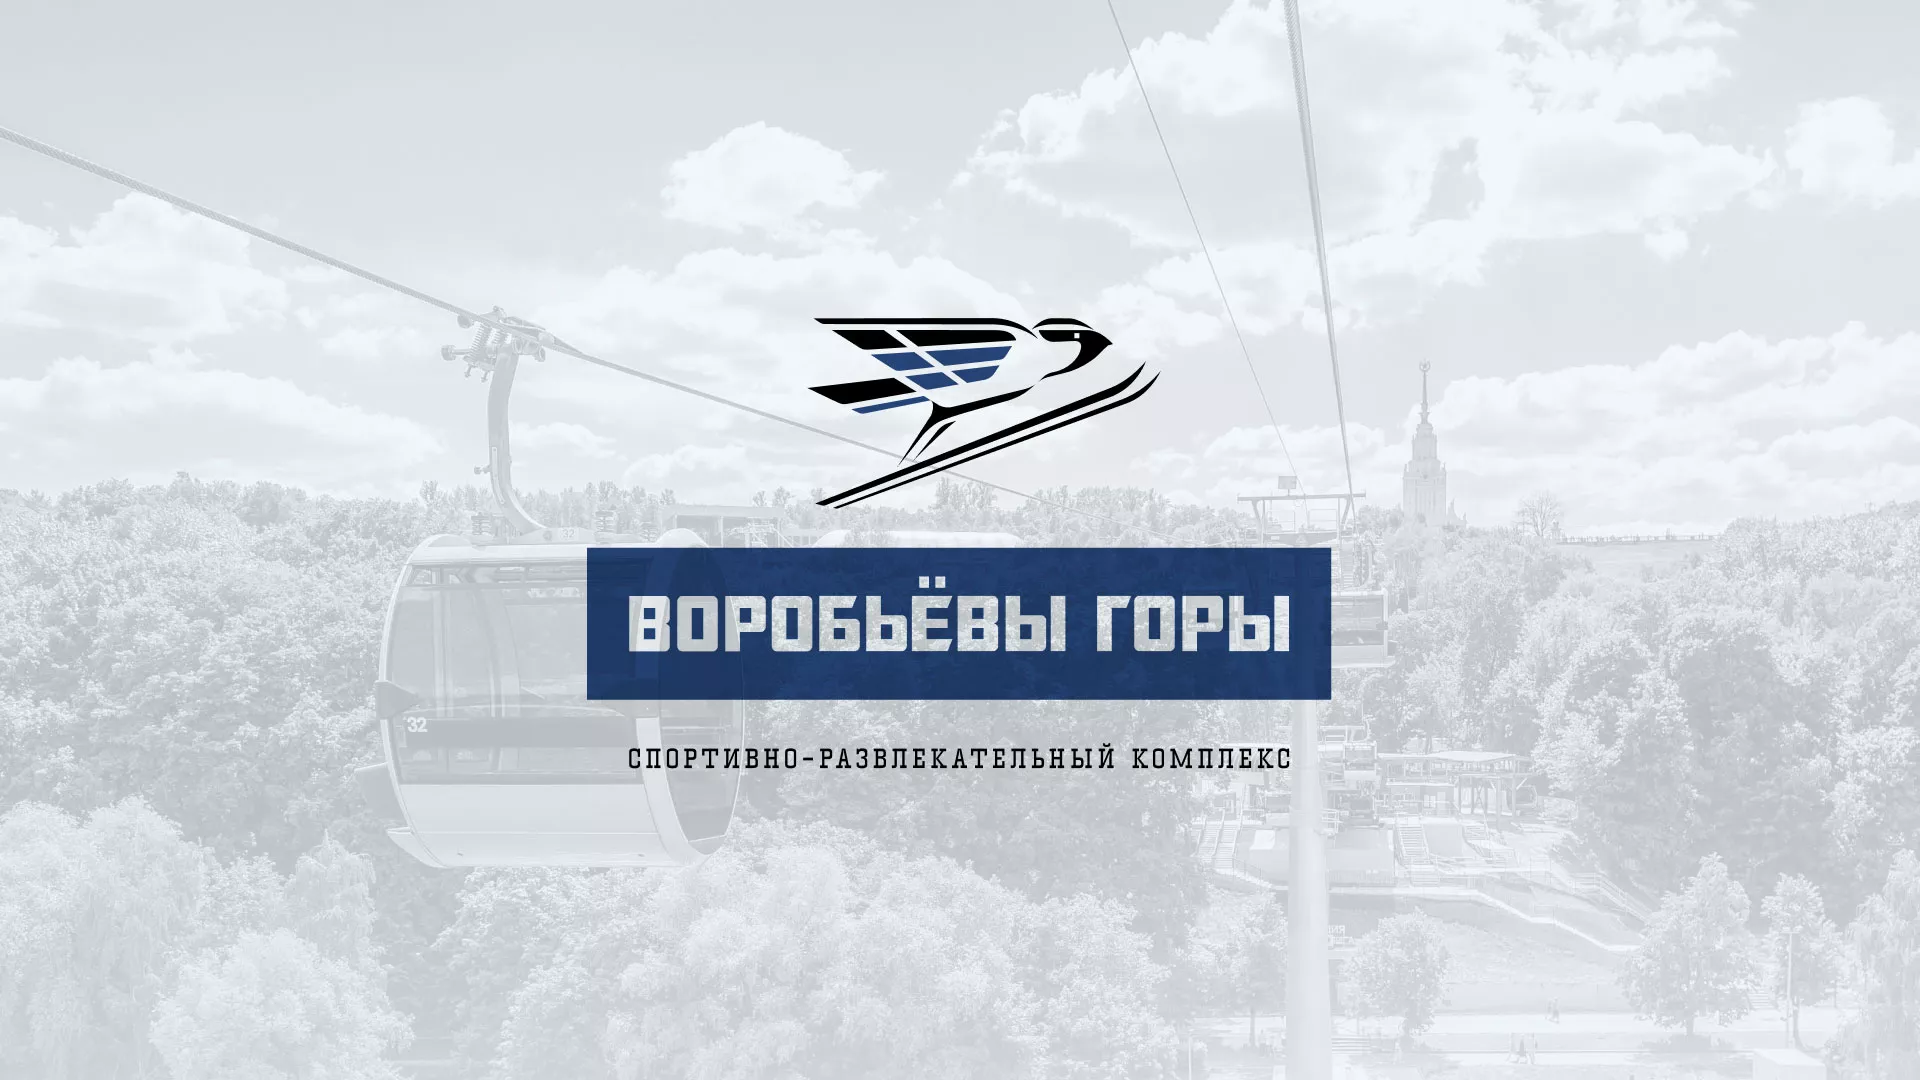 Разработка сайта в Петровске-Забайкальском для спортивно-развлекательного комплекса «Воробьёвы горы»